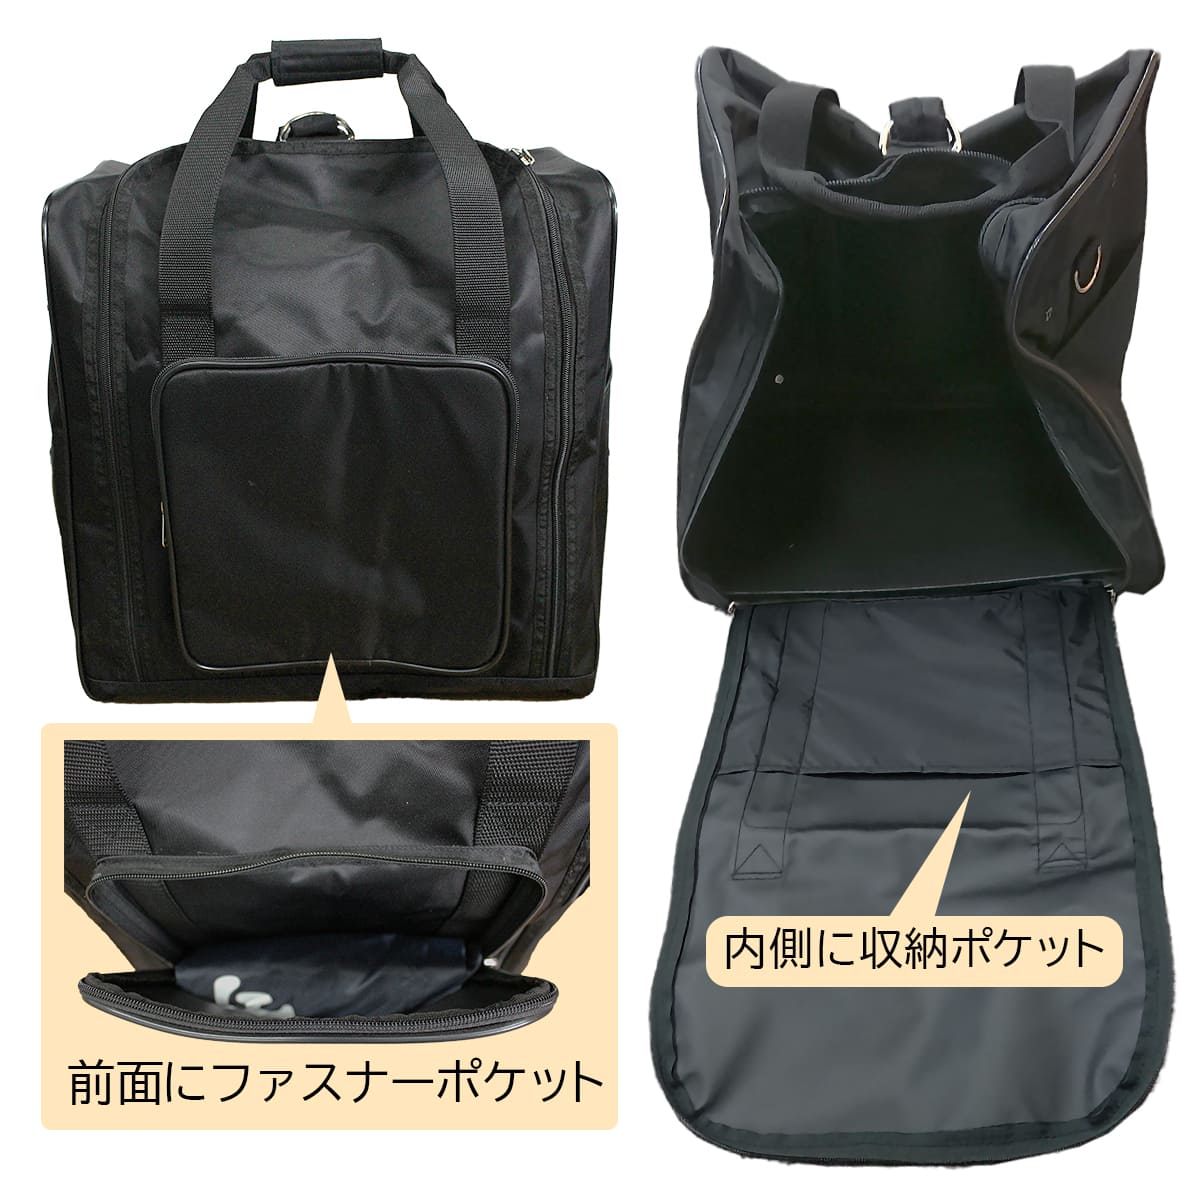 3WAY.Bag – 西日本武道具